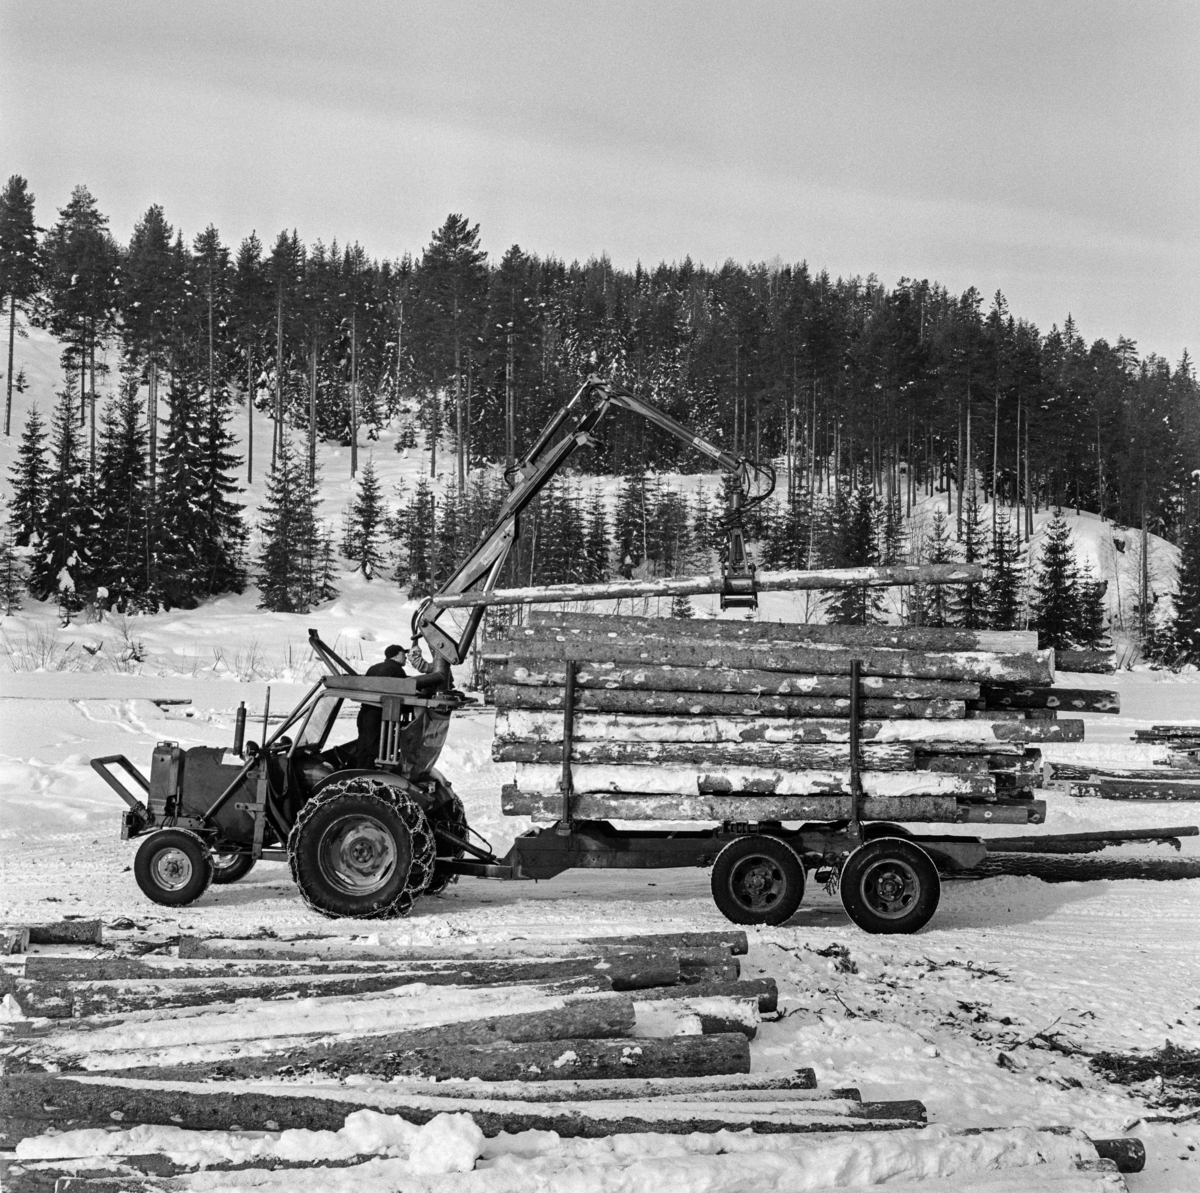 Tømmerkjøring med traktor, muligens på Jømna i Elverum kommune i Hedmark vinteren 1969.  Fotografiet viser en mann som står på knærne i traktorsetet - bakovervendt - og betjener ei kran med gripeklo, som løfter tømmerstokker opp på en tilhenger med to akslinger, antakelig en ombydgd lastebiltilghenger. 

Traktorer med tømmertilhenger og griplasterkran ble lansert som en nyhet i slutten av 1960-åra.  Da hadde den svenske produsenten HIAB lansert sin «skogselefant».  De norske skogteknologene var skeptiske til denne maskintypen.  Med den norske eiendomsstrukturen og i norsk terreng var det de rammestyrte helstammelunnerne som var framtidsrettet, hevdet de.  Mjøsen, Glommen og Nedre Glommen skogeierforeninger satte likevel i gang forsøk med det de kalte «kombinasjonsmaskiner» - traktorer med griplastere og boggidoninger.  I slutten av 1960-åra kunne norske maskinleverandører tilby flere varianter av slike maskiner.  Den svenaske «skogselefanten» med HIAB-kran på en rammestyrt traktor var den mest avanserte, men det ble også levert svenske og finske kranmodeller som kunne monteres på kraftige landbrukstraktorer.  Også den norske maskinfabrikken Hymas i Brumunddal bygde ei gripeklo som kunne monteres i steden for skuffa på bedriftens traktorgravere, som allerede var mye brukt i det norske skogbruket.  Dermed kunne man få helårsdrift på en traktor som inntil da i hovedsak hadde vært brukt sommerstid.  Som tømmerlastingsmaskin var Nuffieldene med kraner fra Hymas mest anvendelige på velteplasser, men de kunne også trekke tilhengere med tømmer som var pålesset ved hjelp av traktorkrana.  Det er usikkert om det vi ser på fotografiet er et Hymas-produkt, eller om det er en svensk modell.  

Etter hvert måtte de rammestyrte stammelunnerne vike plassen for «kombinasjonsmaskiner» med kran og tilhenger for tømmerlass.  Skogteknologene gav dem etter hvert betegnelsen «lastetraktorer», mens maskinforhandlerne brukte betegnelsen «lassbærere», for å tydeliggjøre at det tømmeret man fikk fram ikke ville være sølete og tilgriset, slik stammelunnet virke kunne være, i hvert fall i sommerhalvåret.